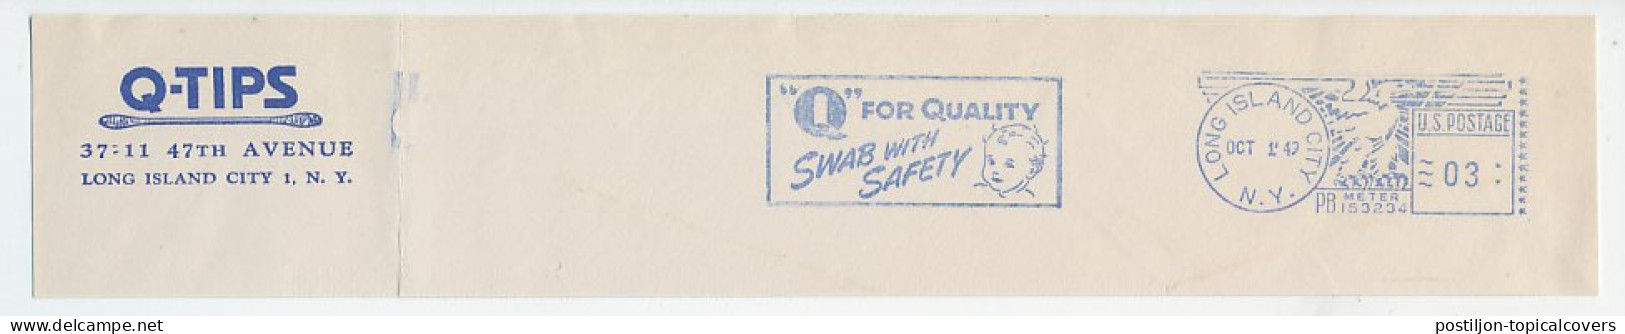 Meter Top Cut USA 1949 Swab With Saefty - Ear - Autres & Non Classés